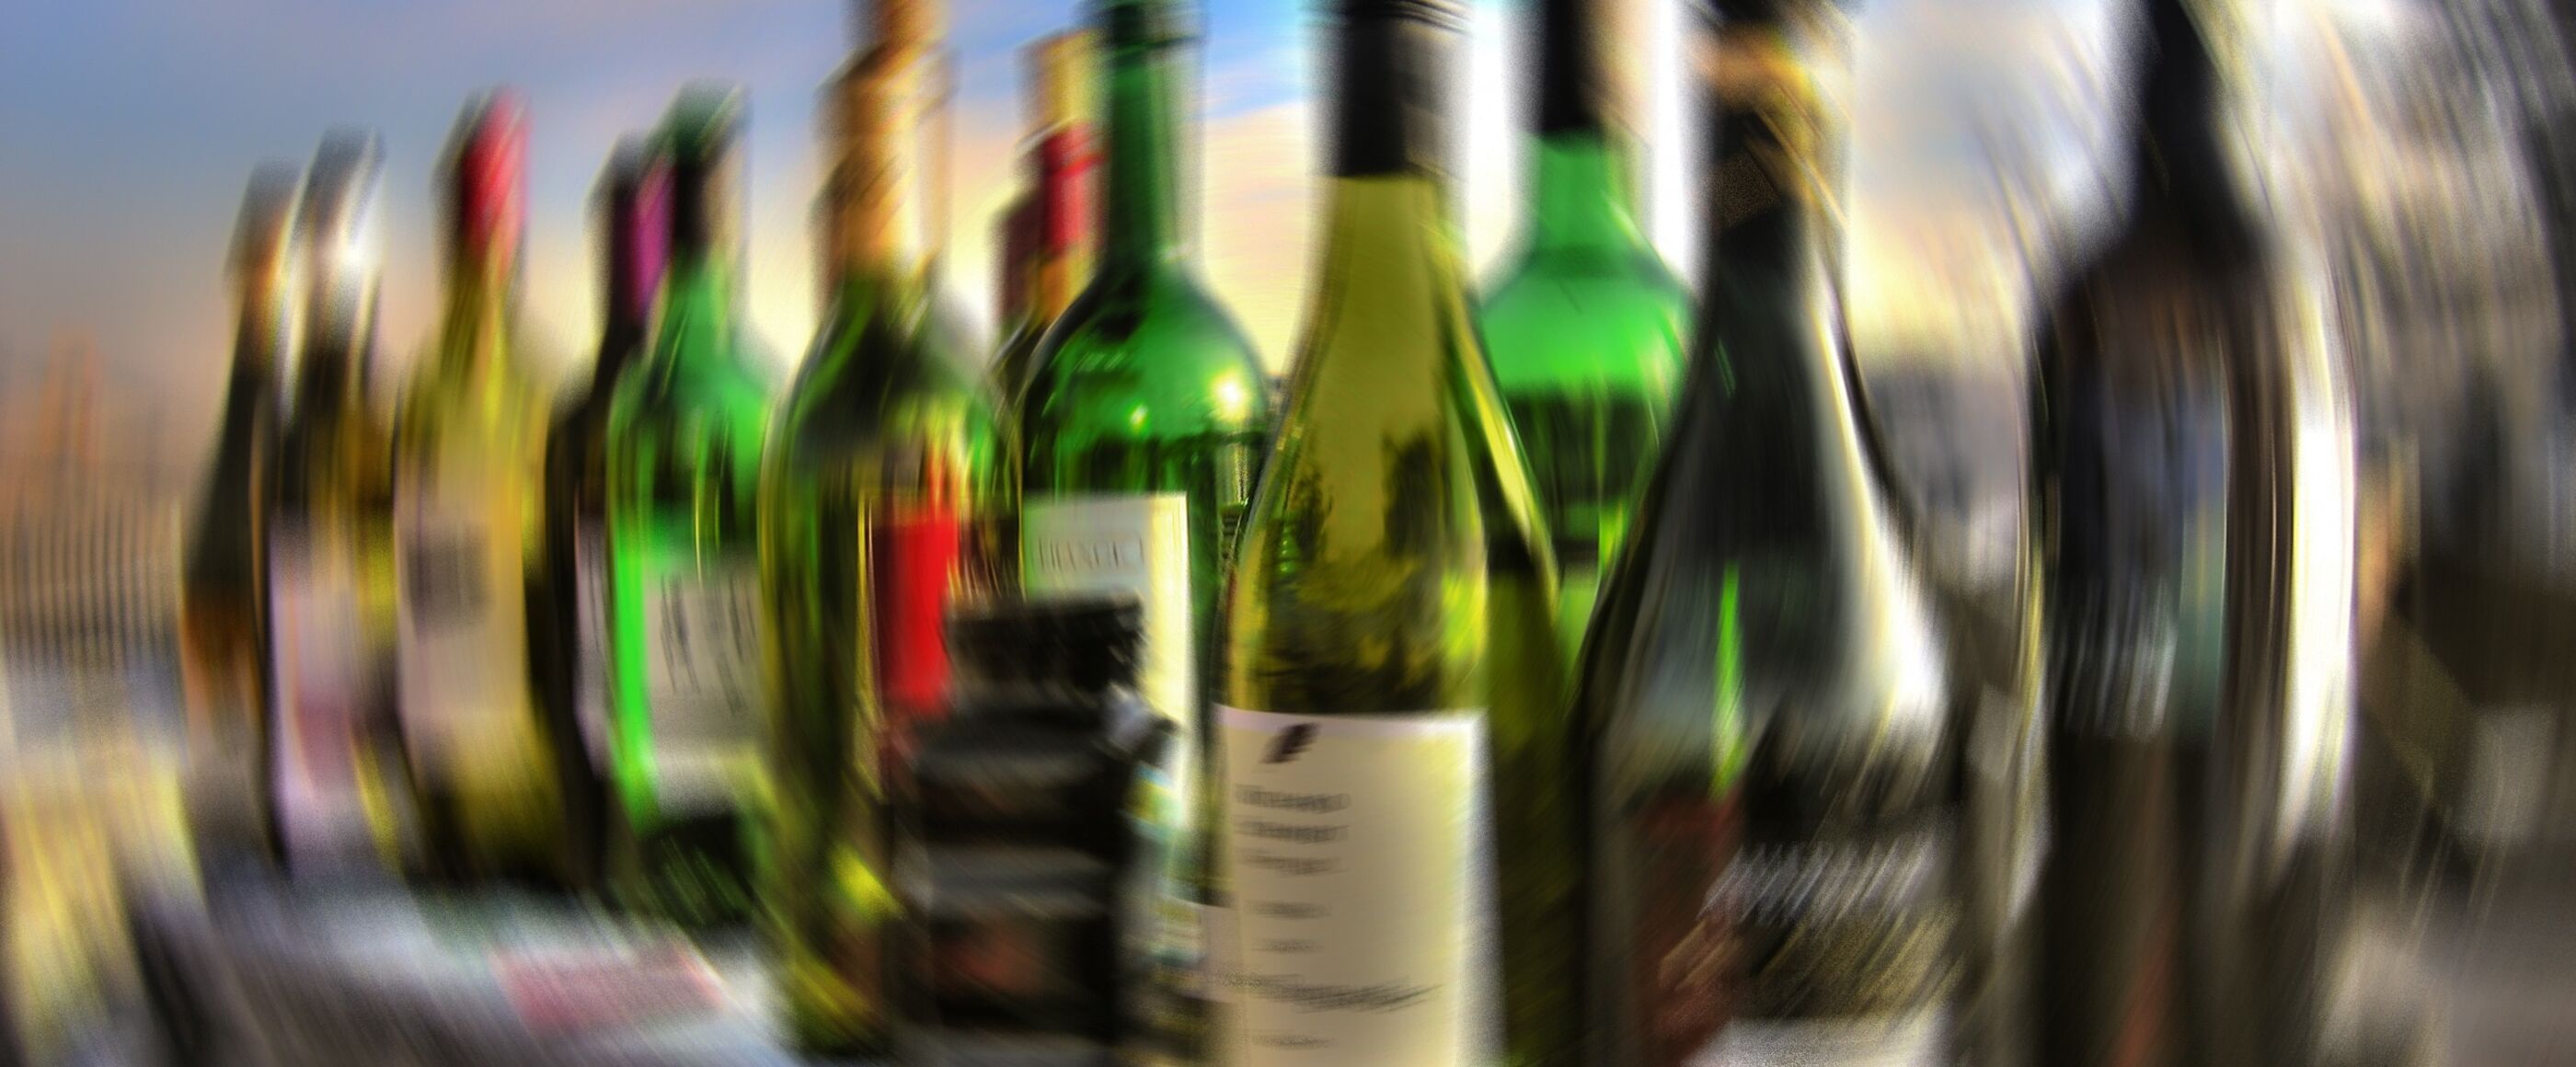 Mehrere durch einen Filter verfremdete Alkoholflaschen